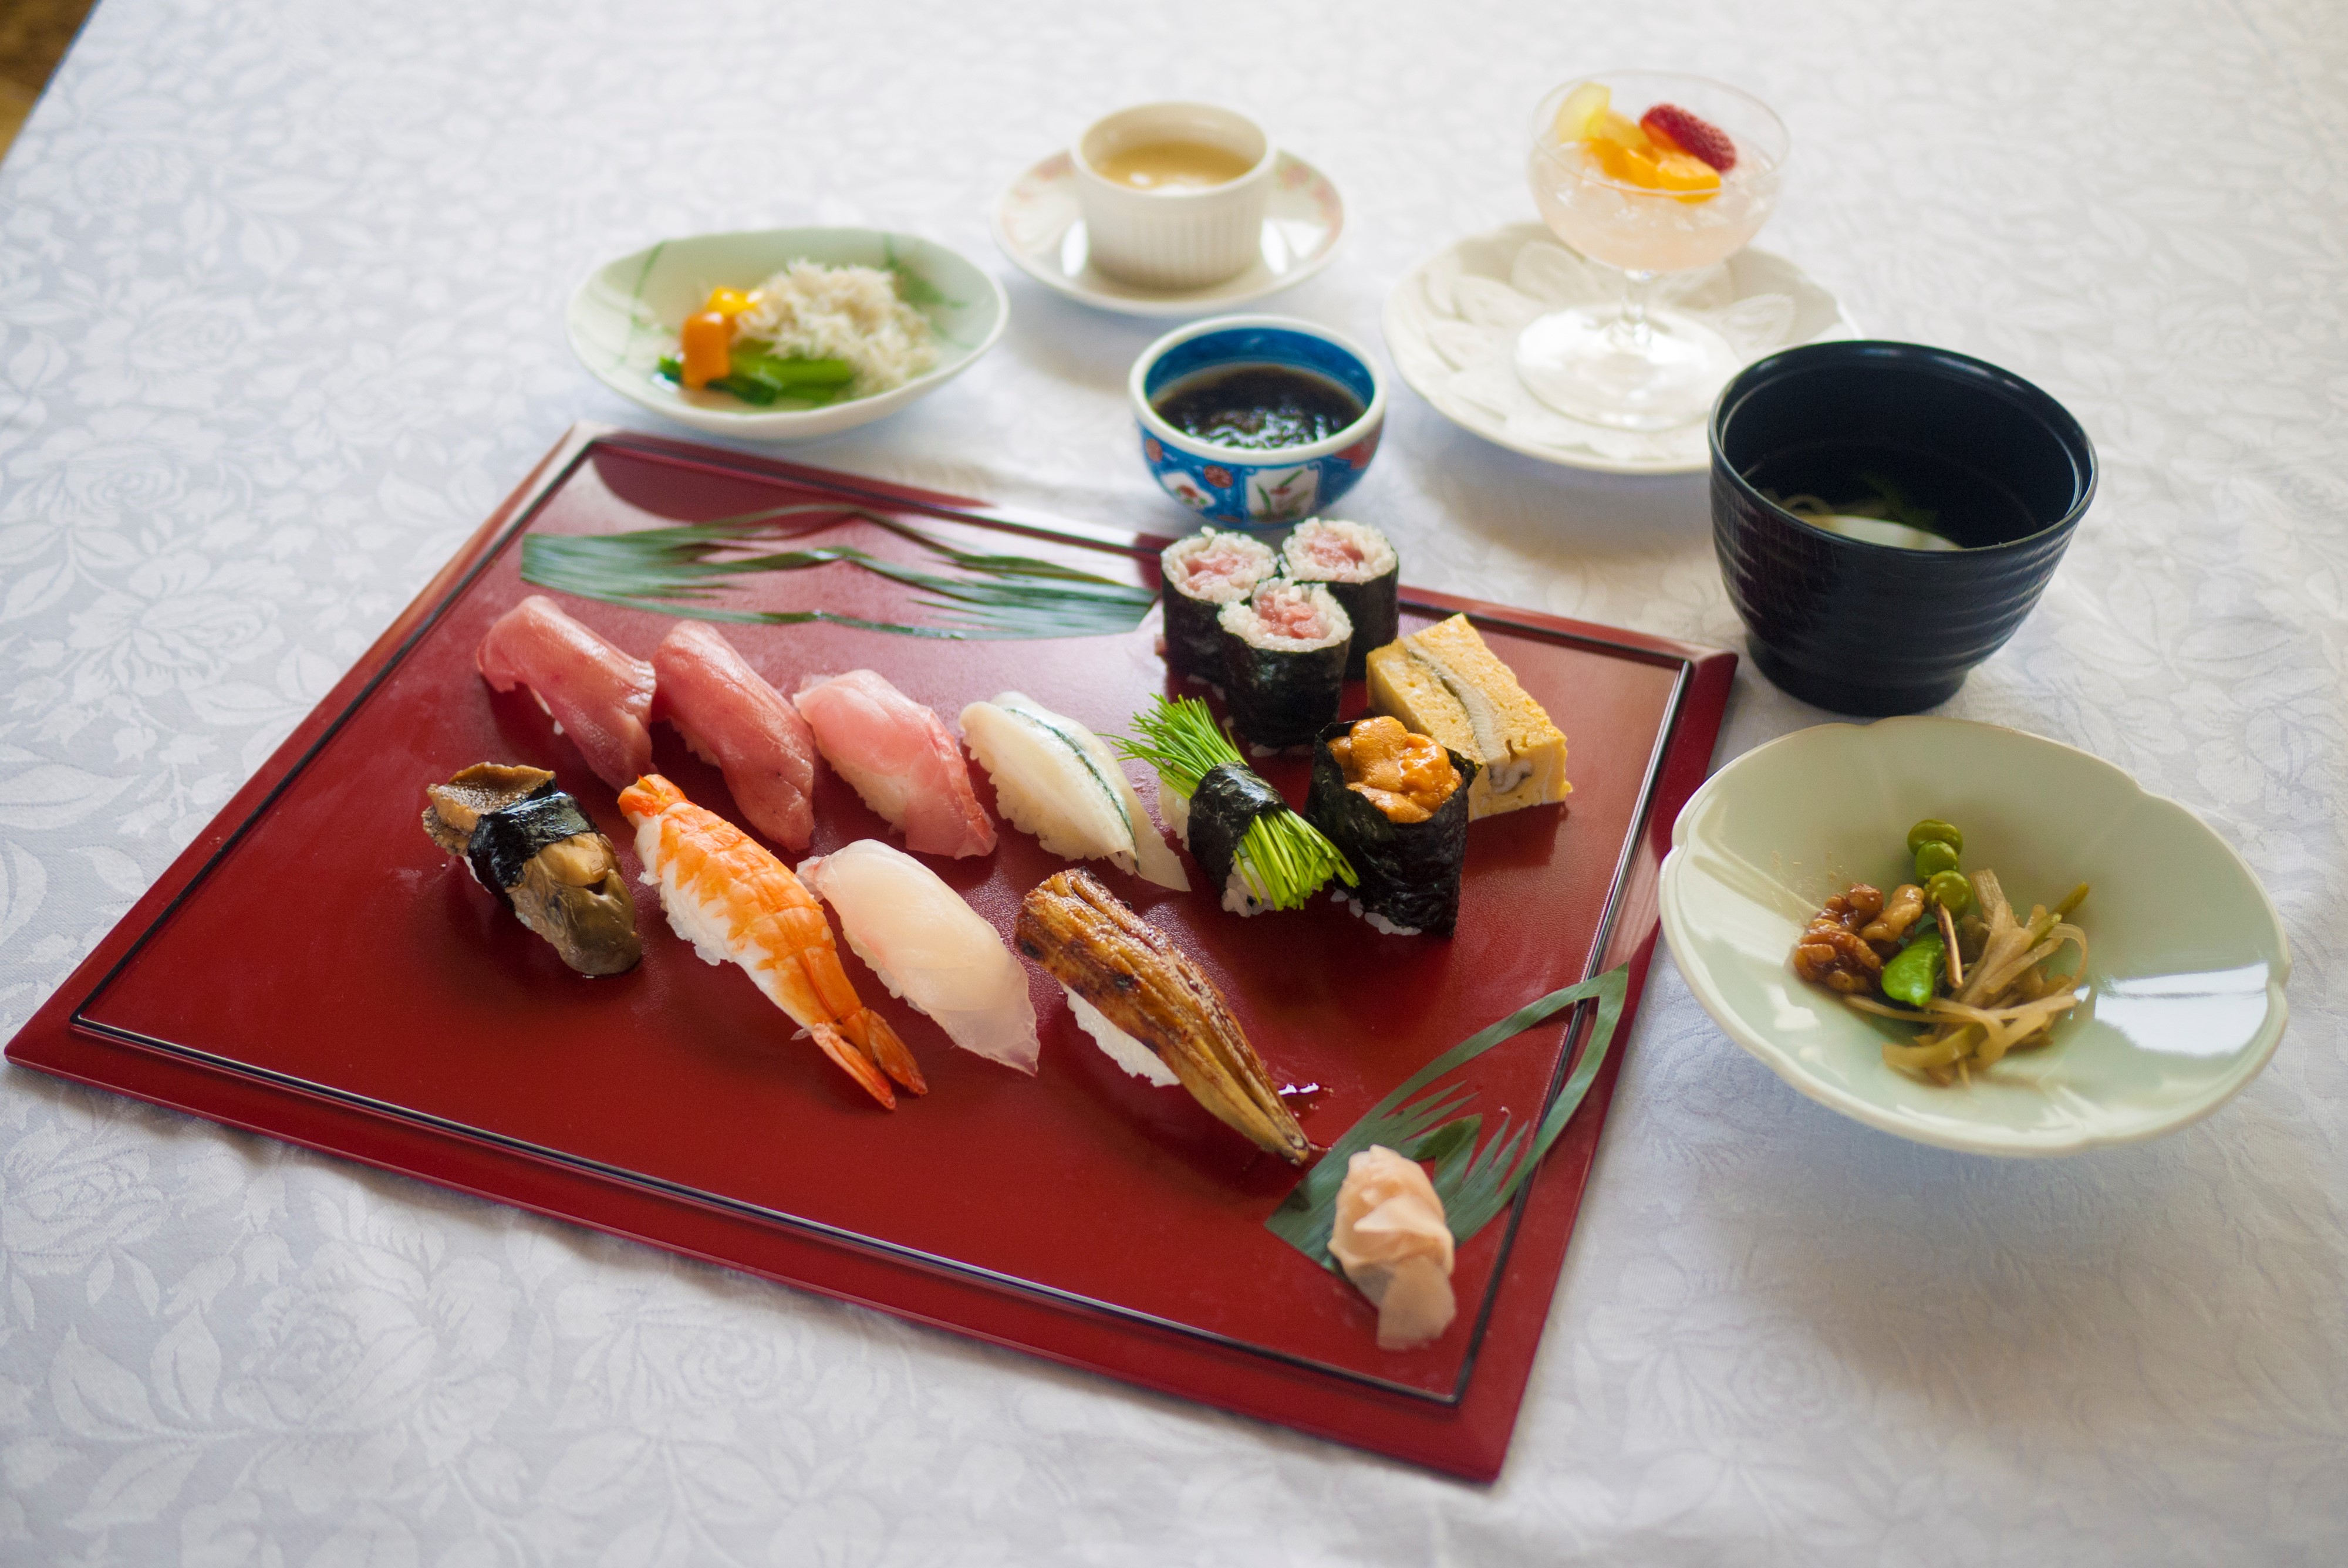 上寿司(内容は季節により異なる場合がございます)